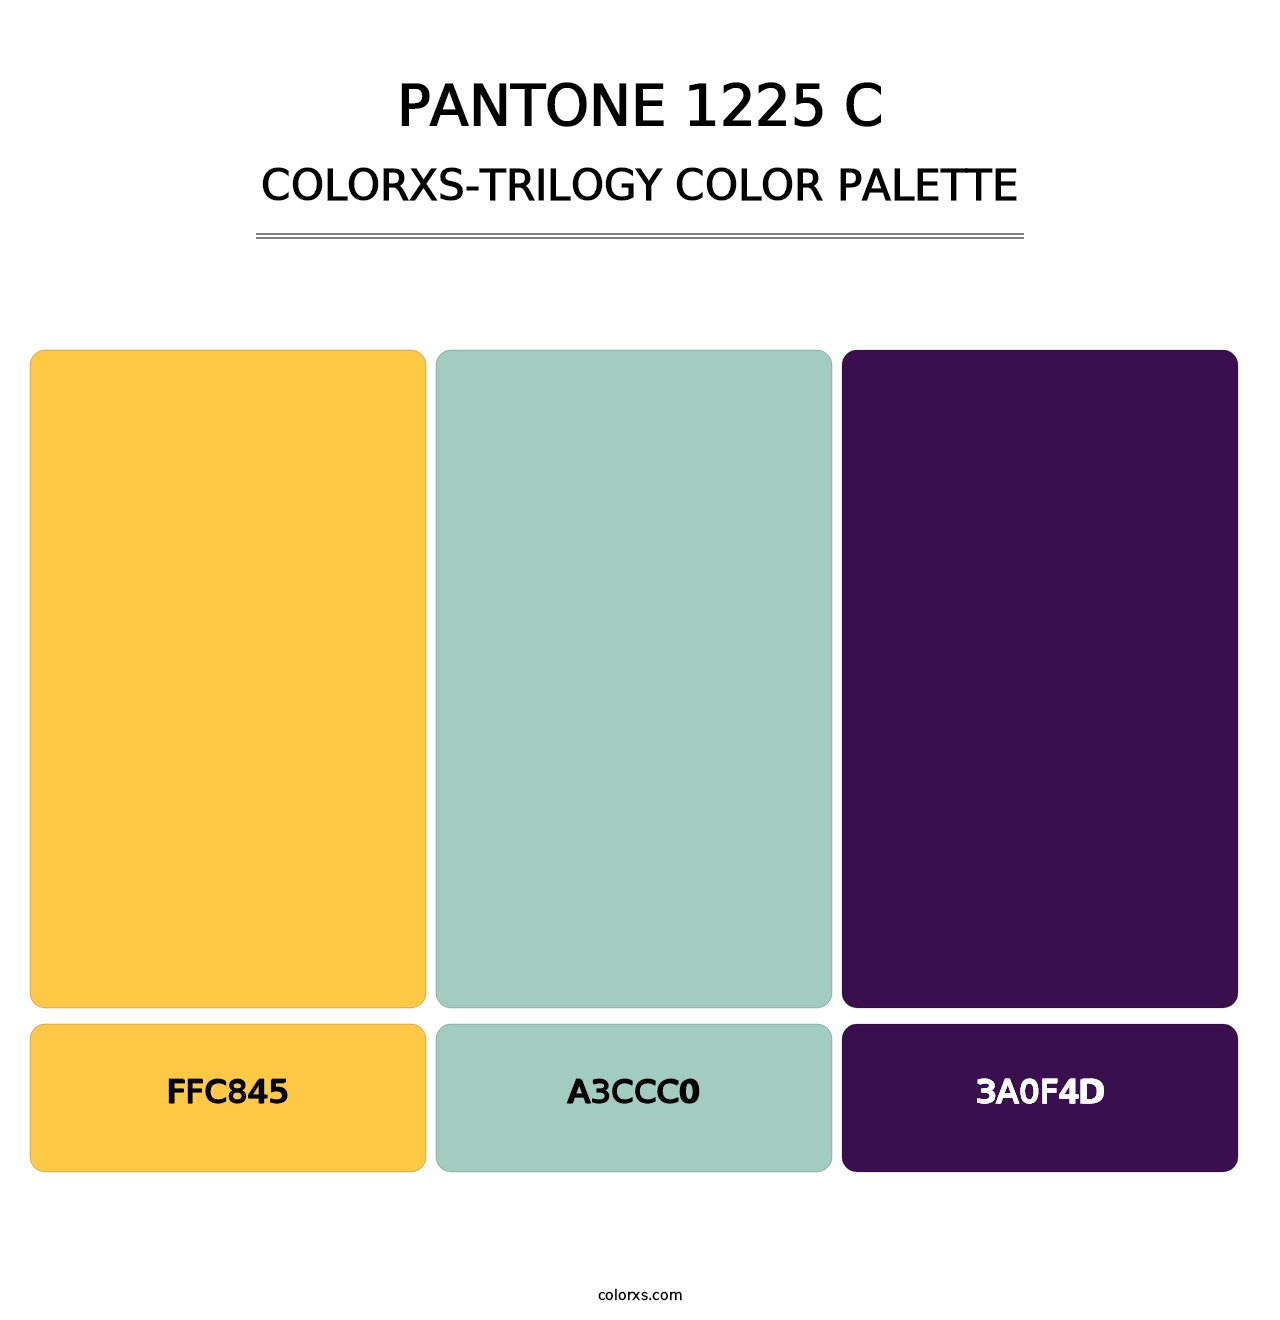 PANTONE 1225 C - Colorxs Trilogy Palette